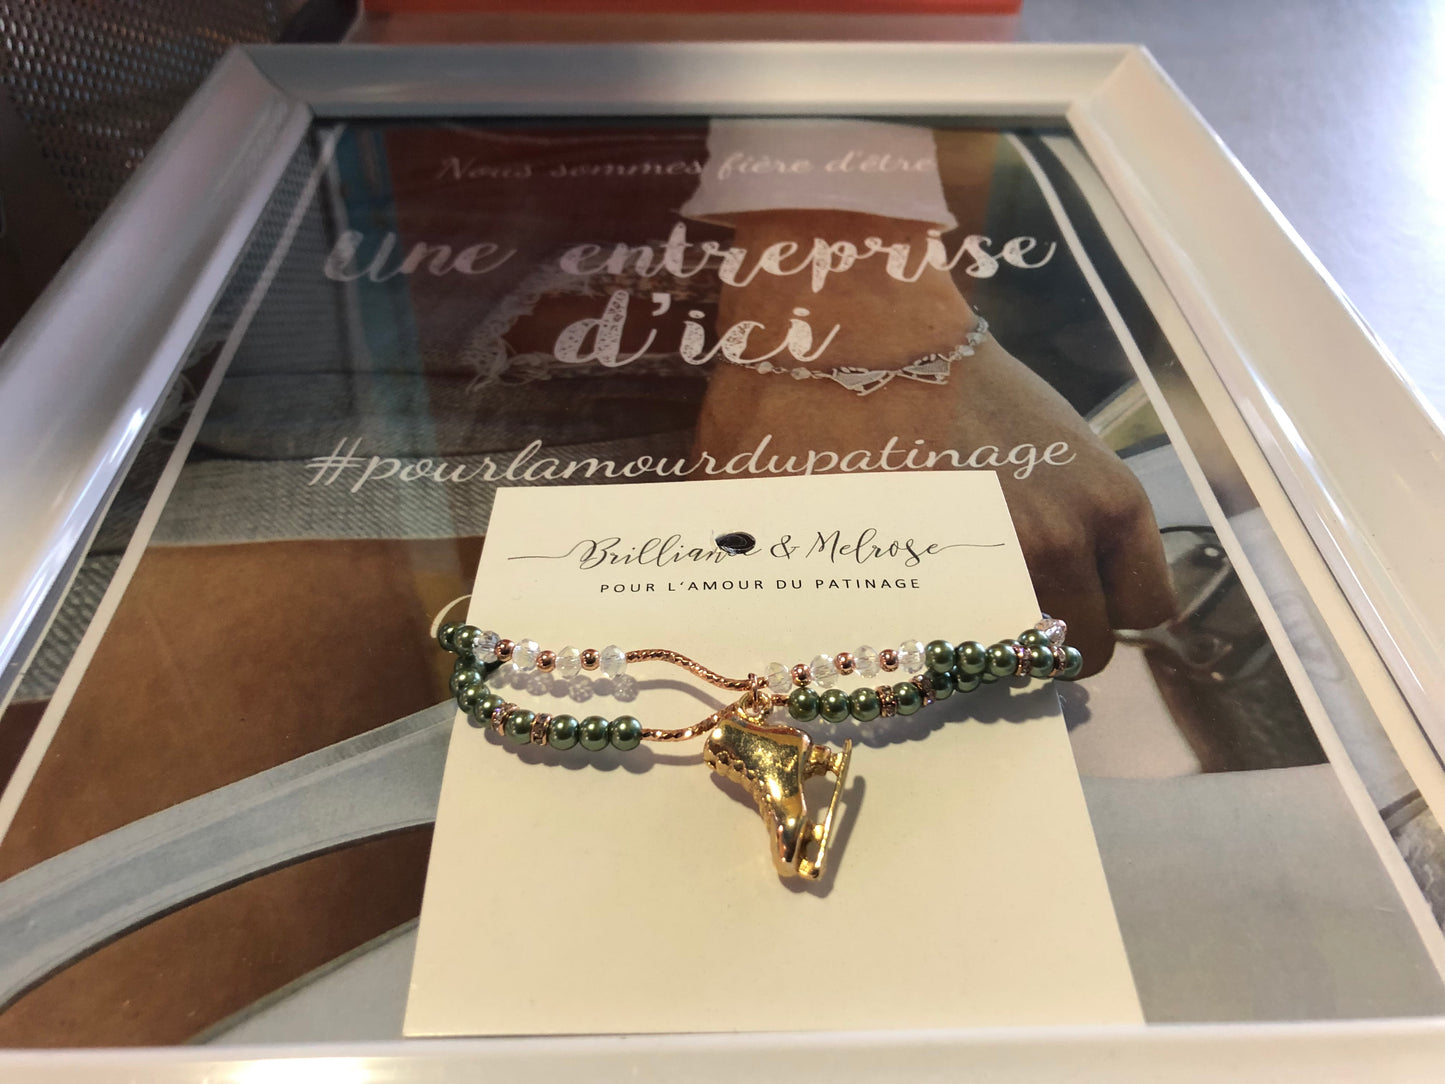 Bracelet avec billes de couleur Brilliance & Melrose